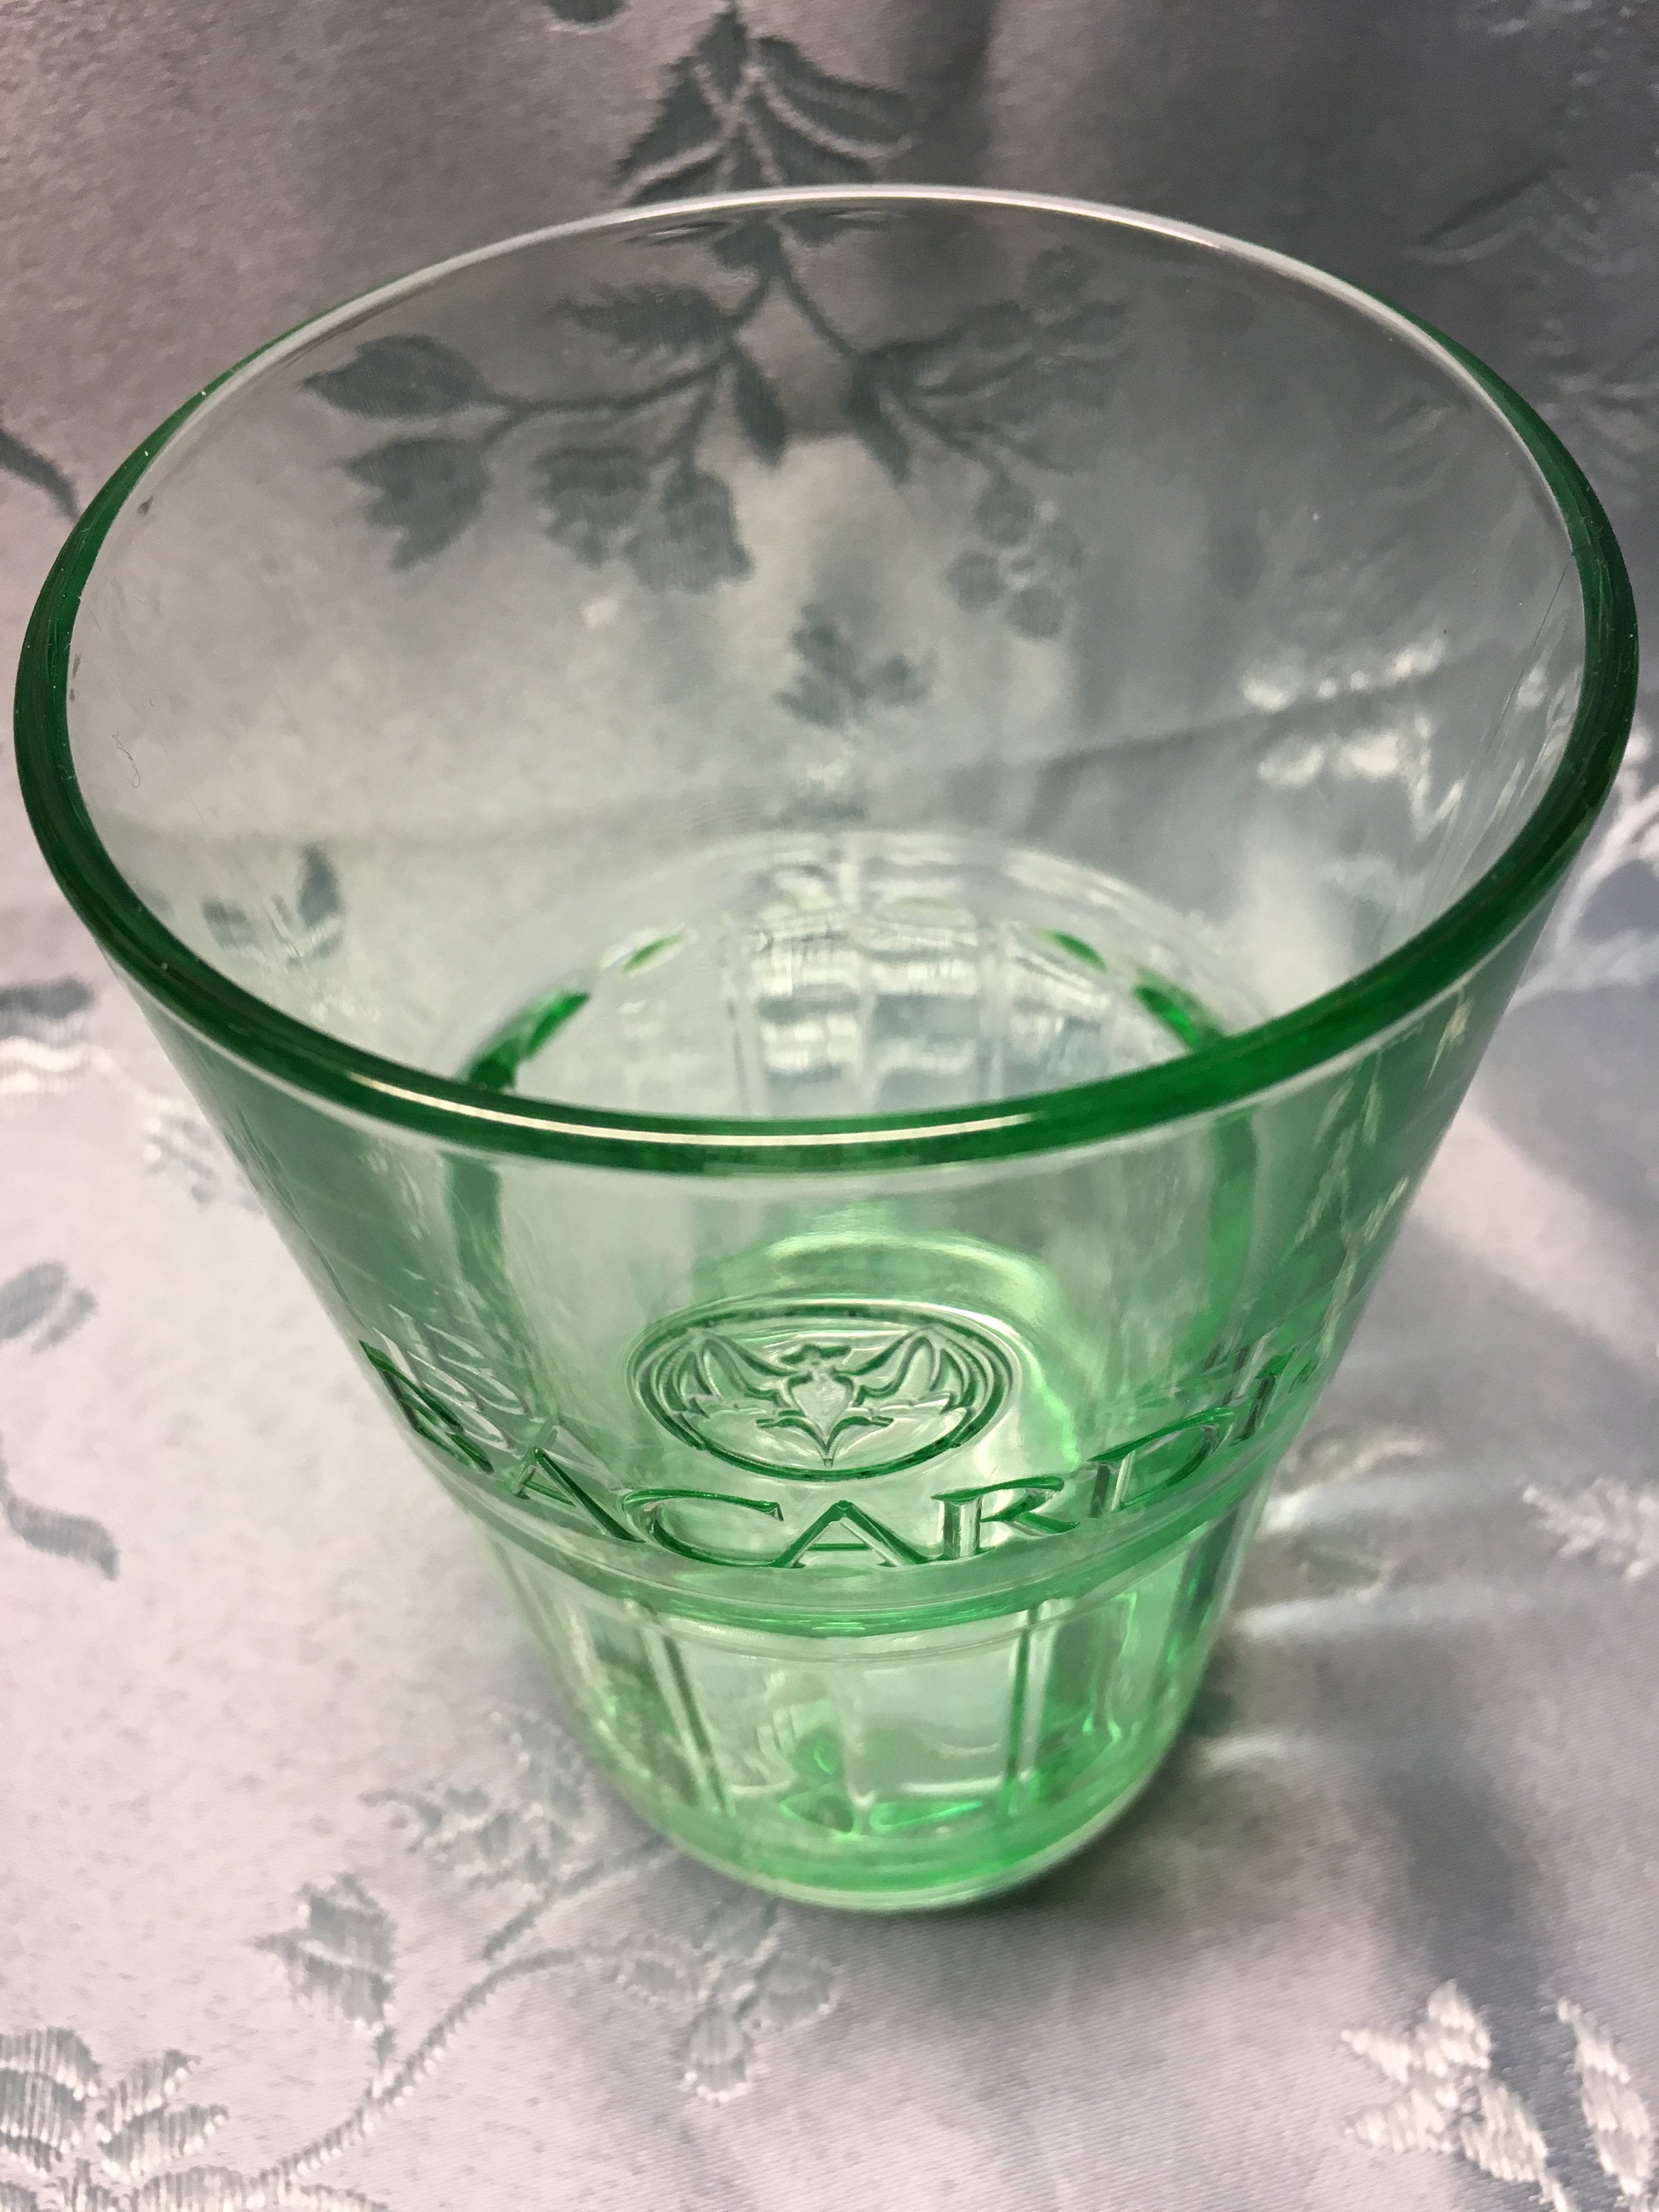 Premium Highball Glass (set of 2) – CASA BACARDÍ